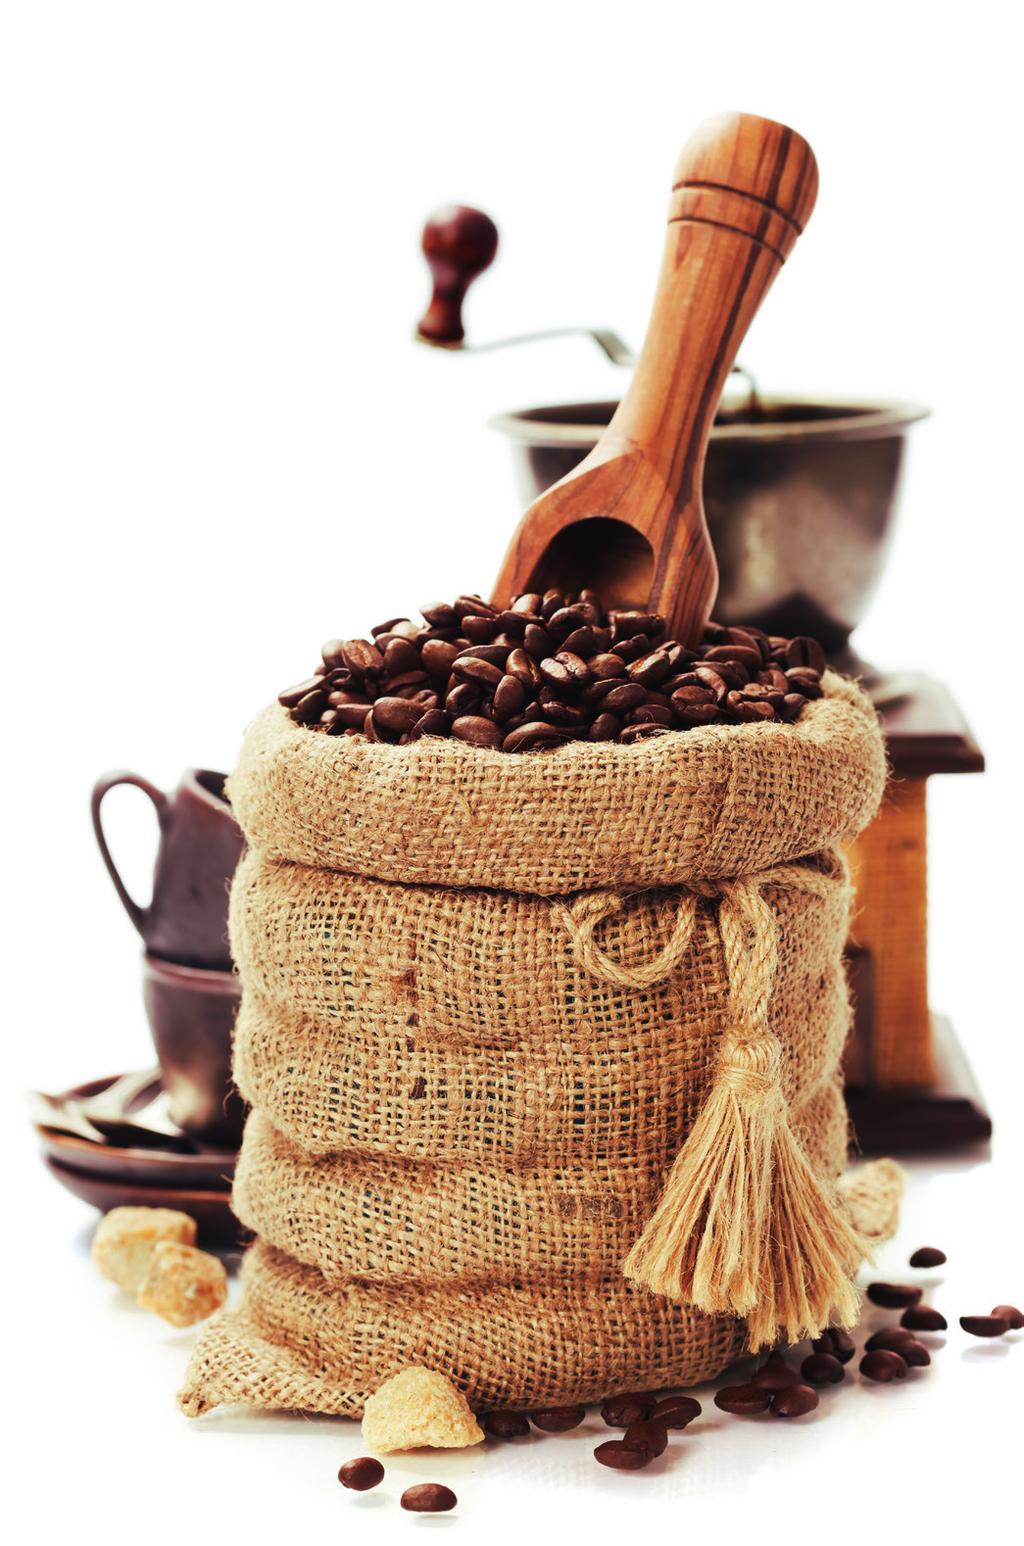 Die Kaffeesteuer Geschichte Die Kaffeesteuer entstand infolge des stark angestiegenen Kaffeeverbrauchs im 17. Jahrhundert.